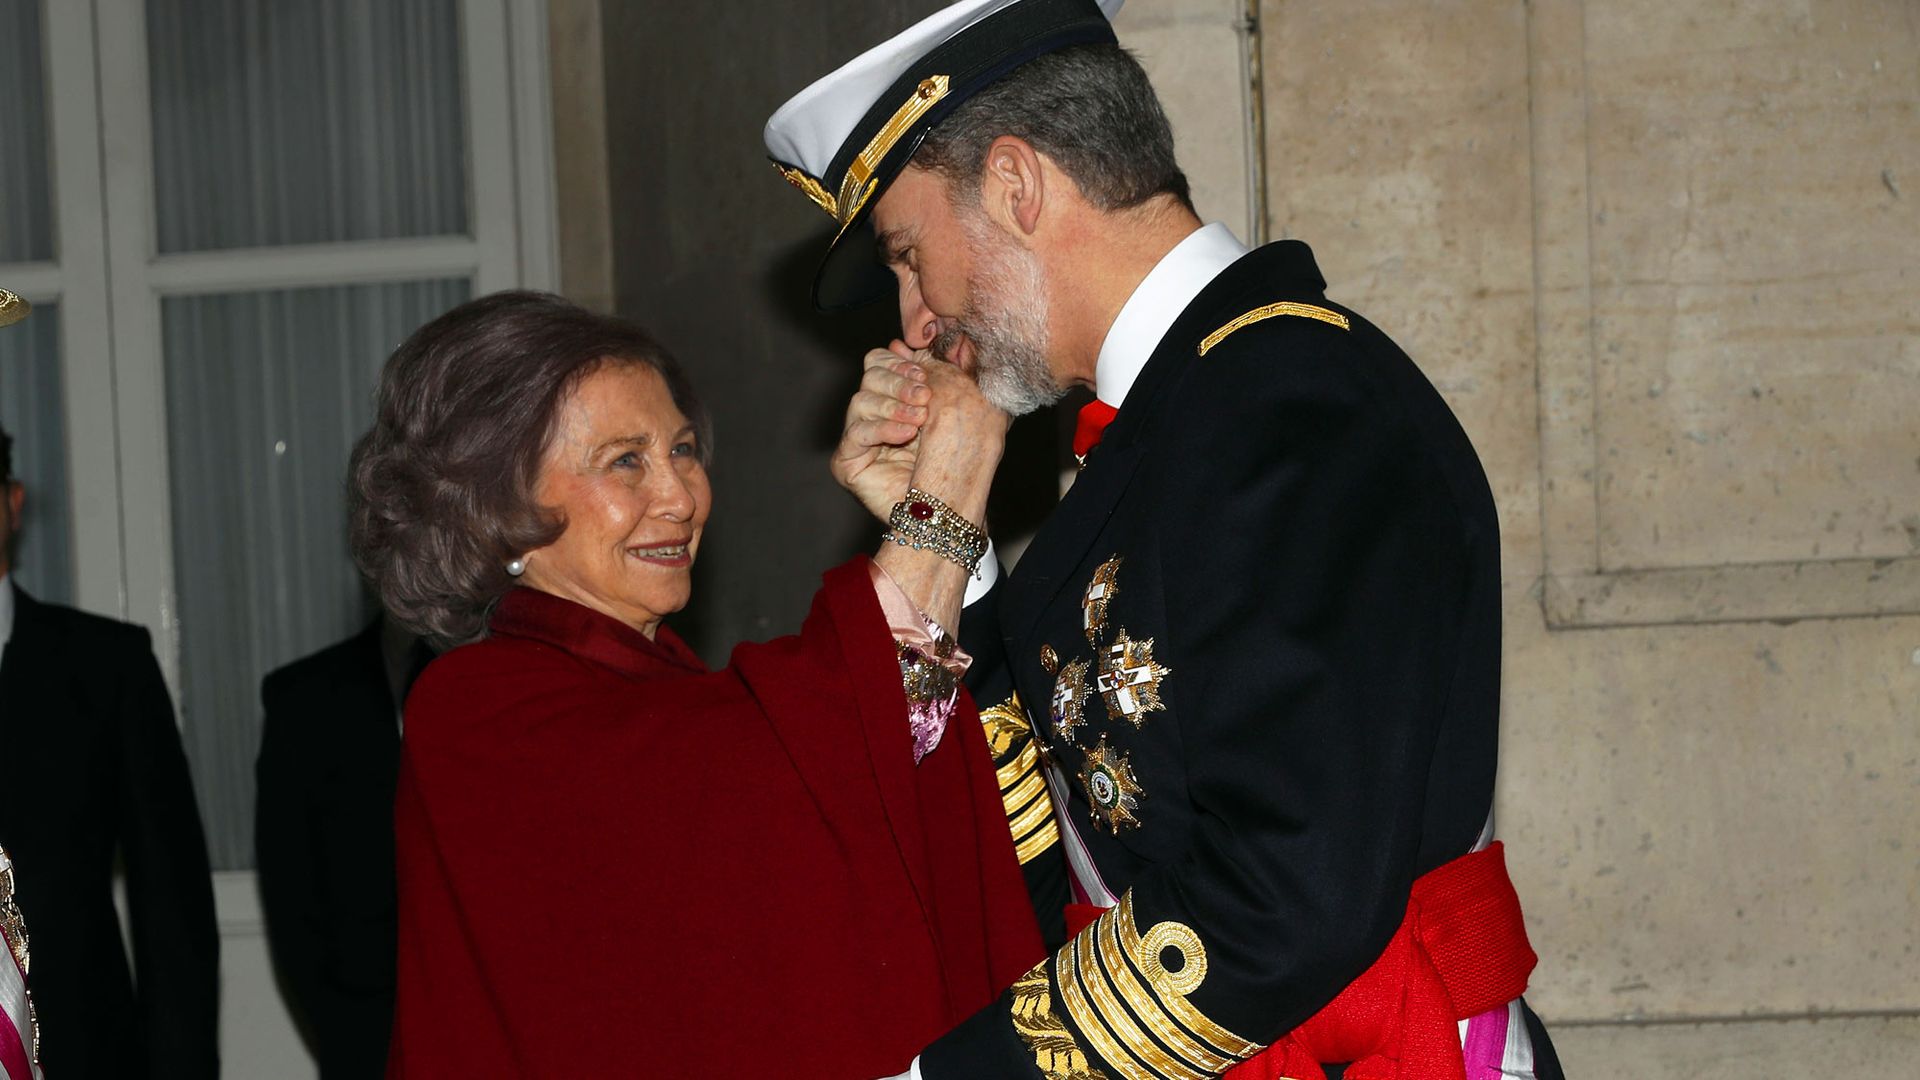 Cómo han sido estos diez años de reinado de Felipe VI para la reina Sofía